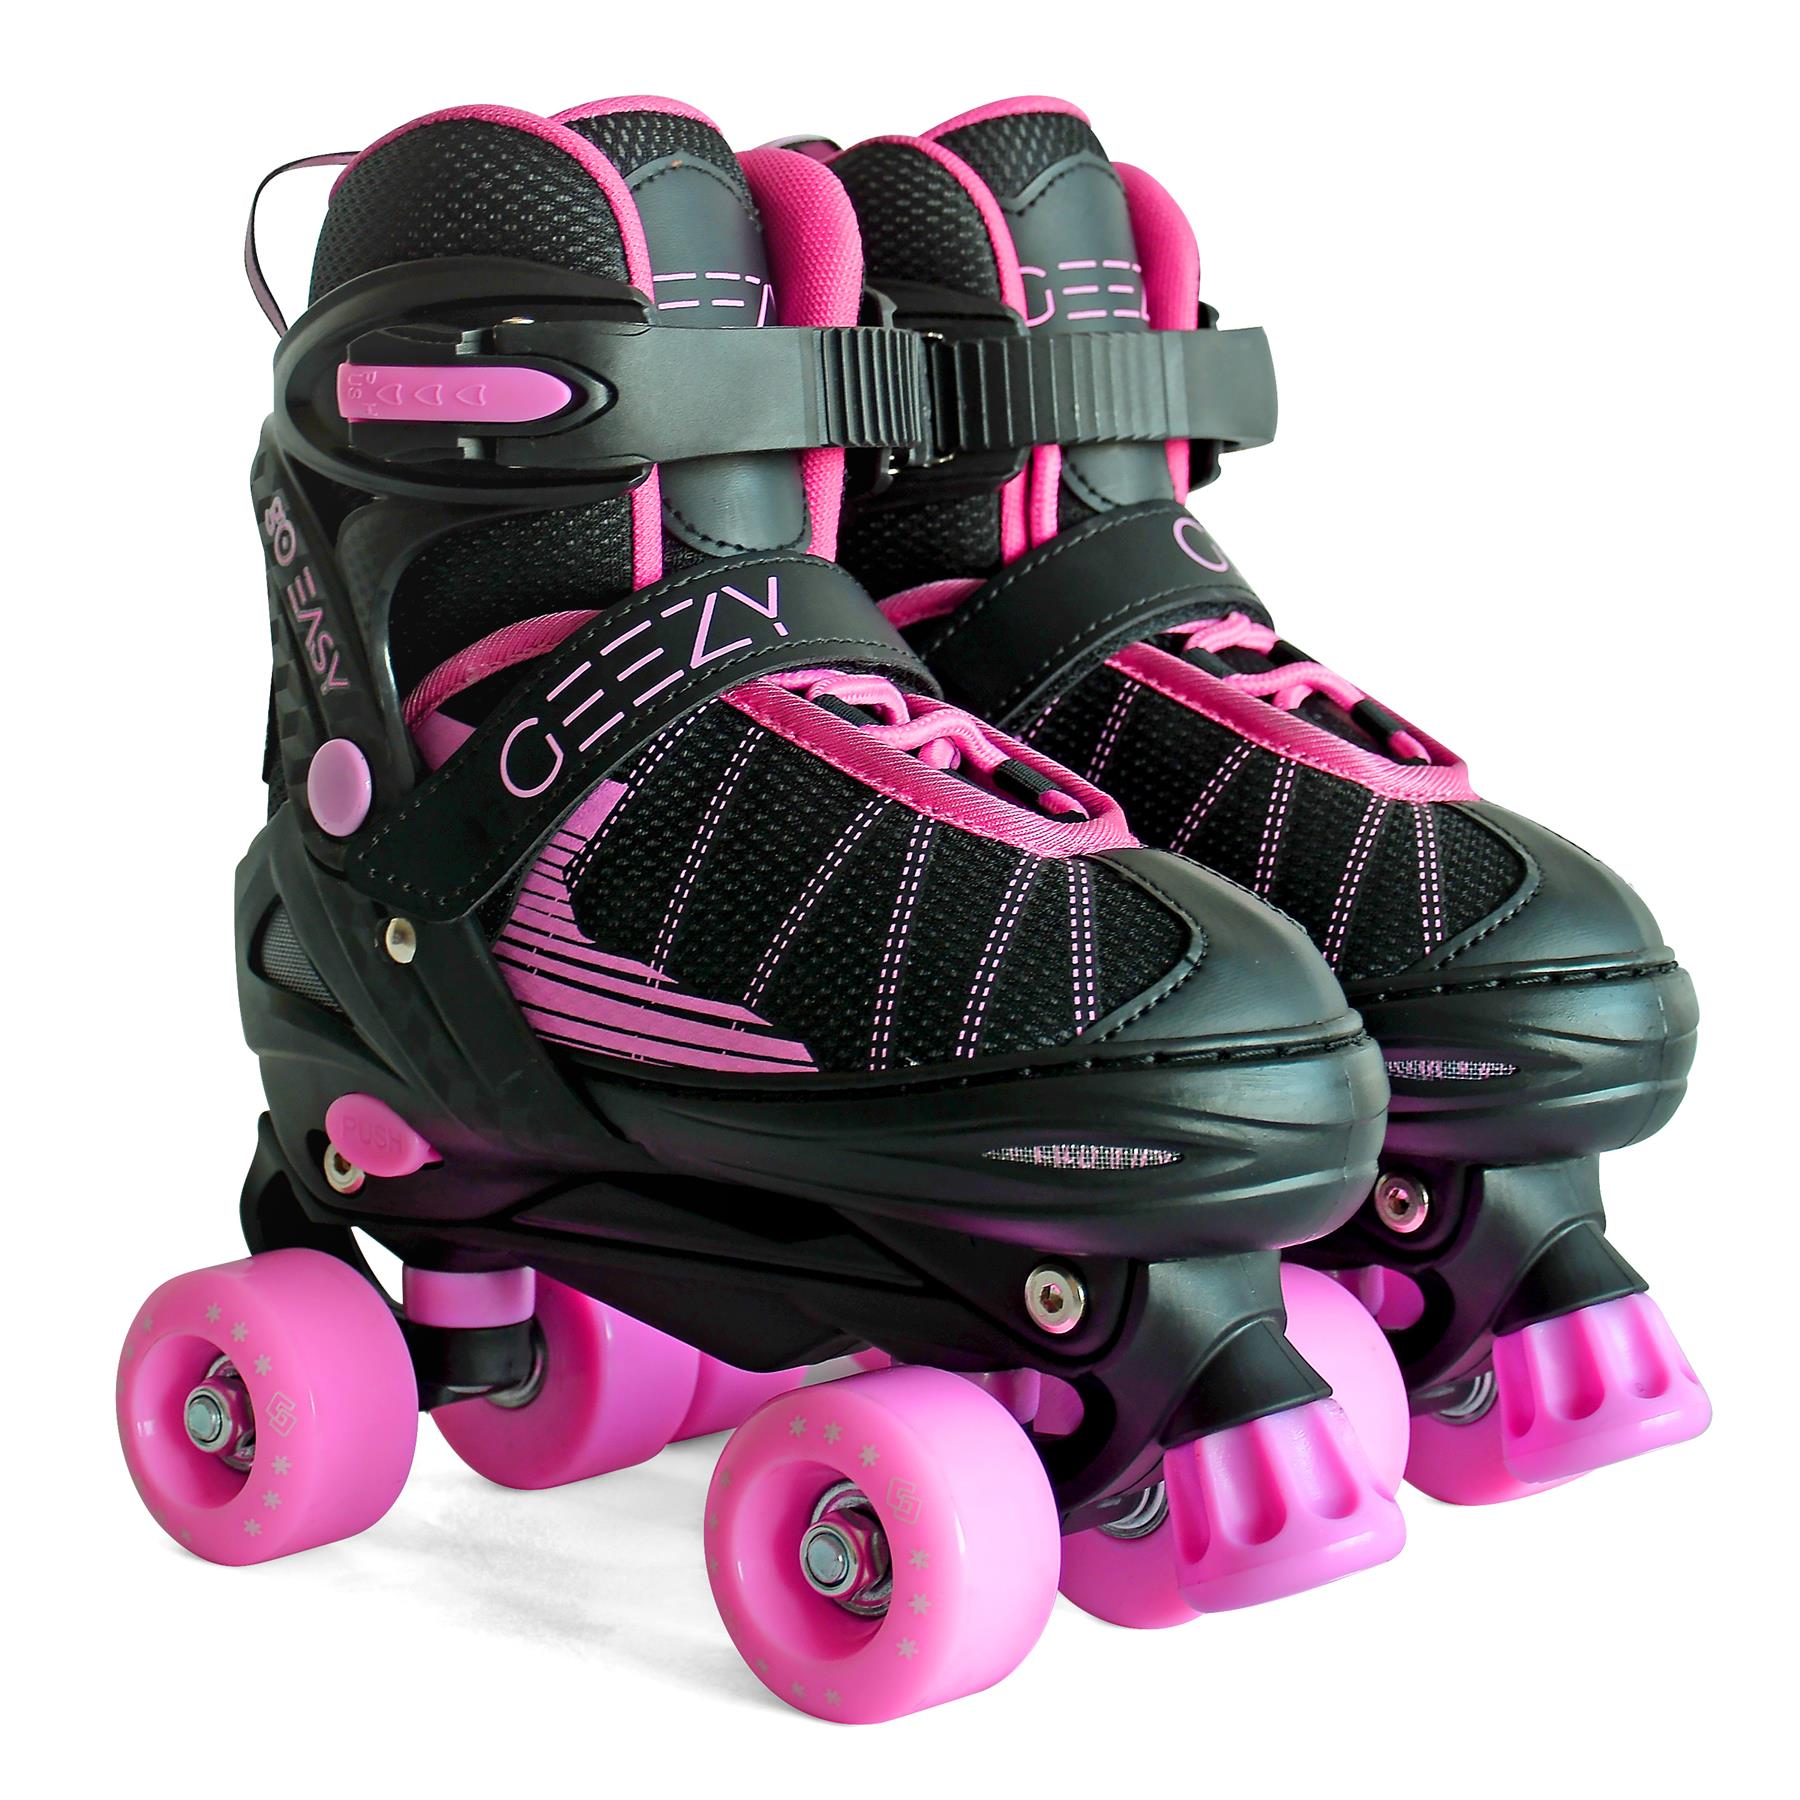 The Magic Toy Shop Pink & Black Adjustable Roller Skates